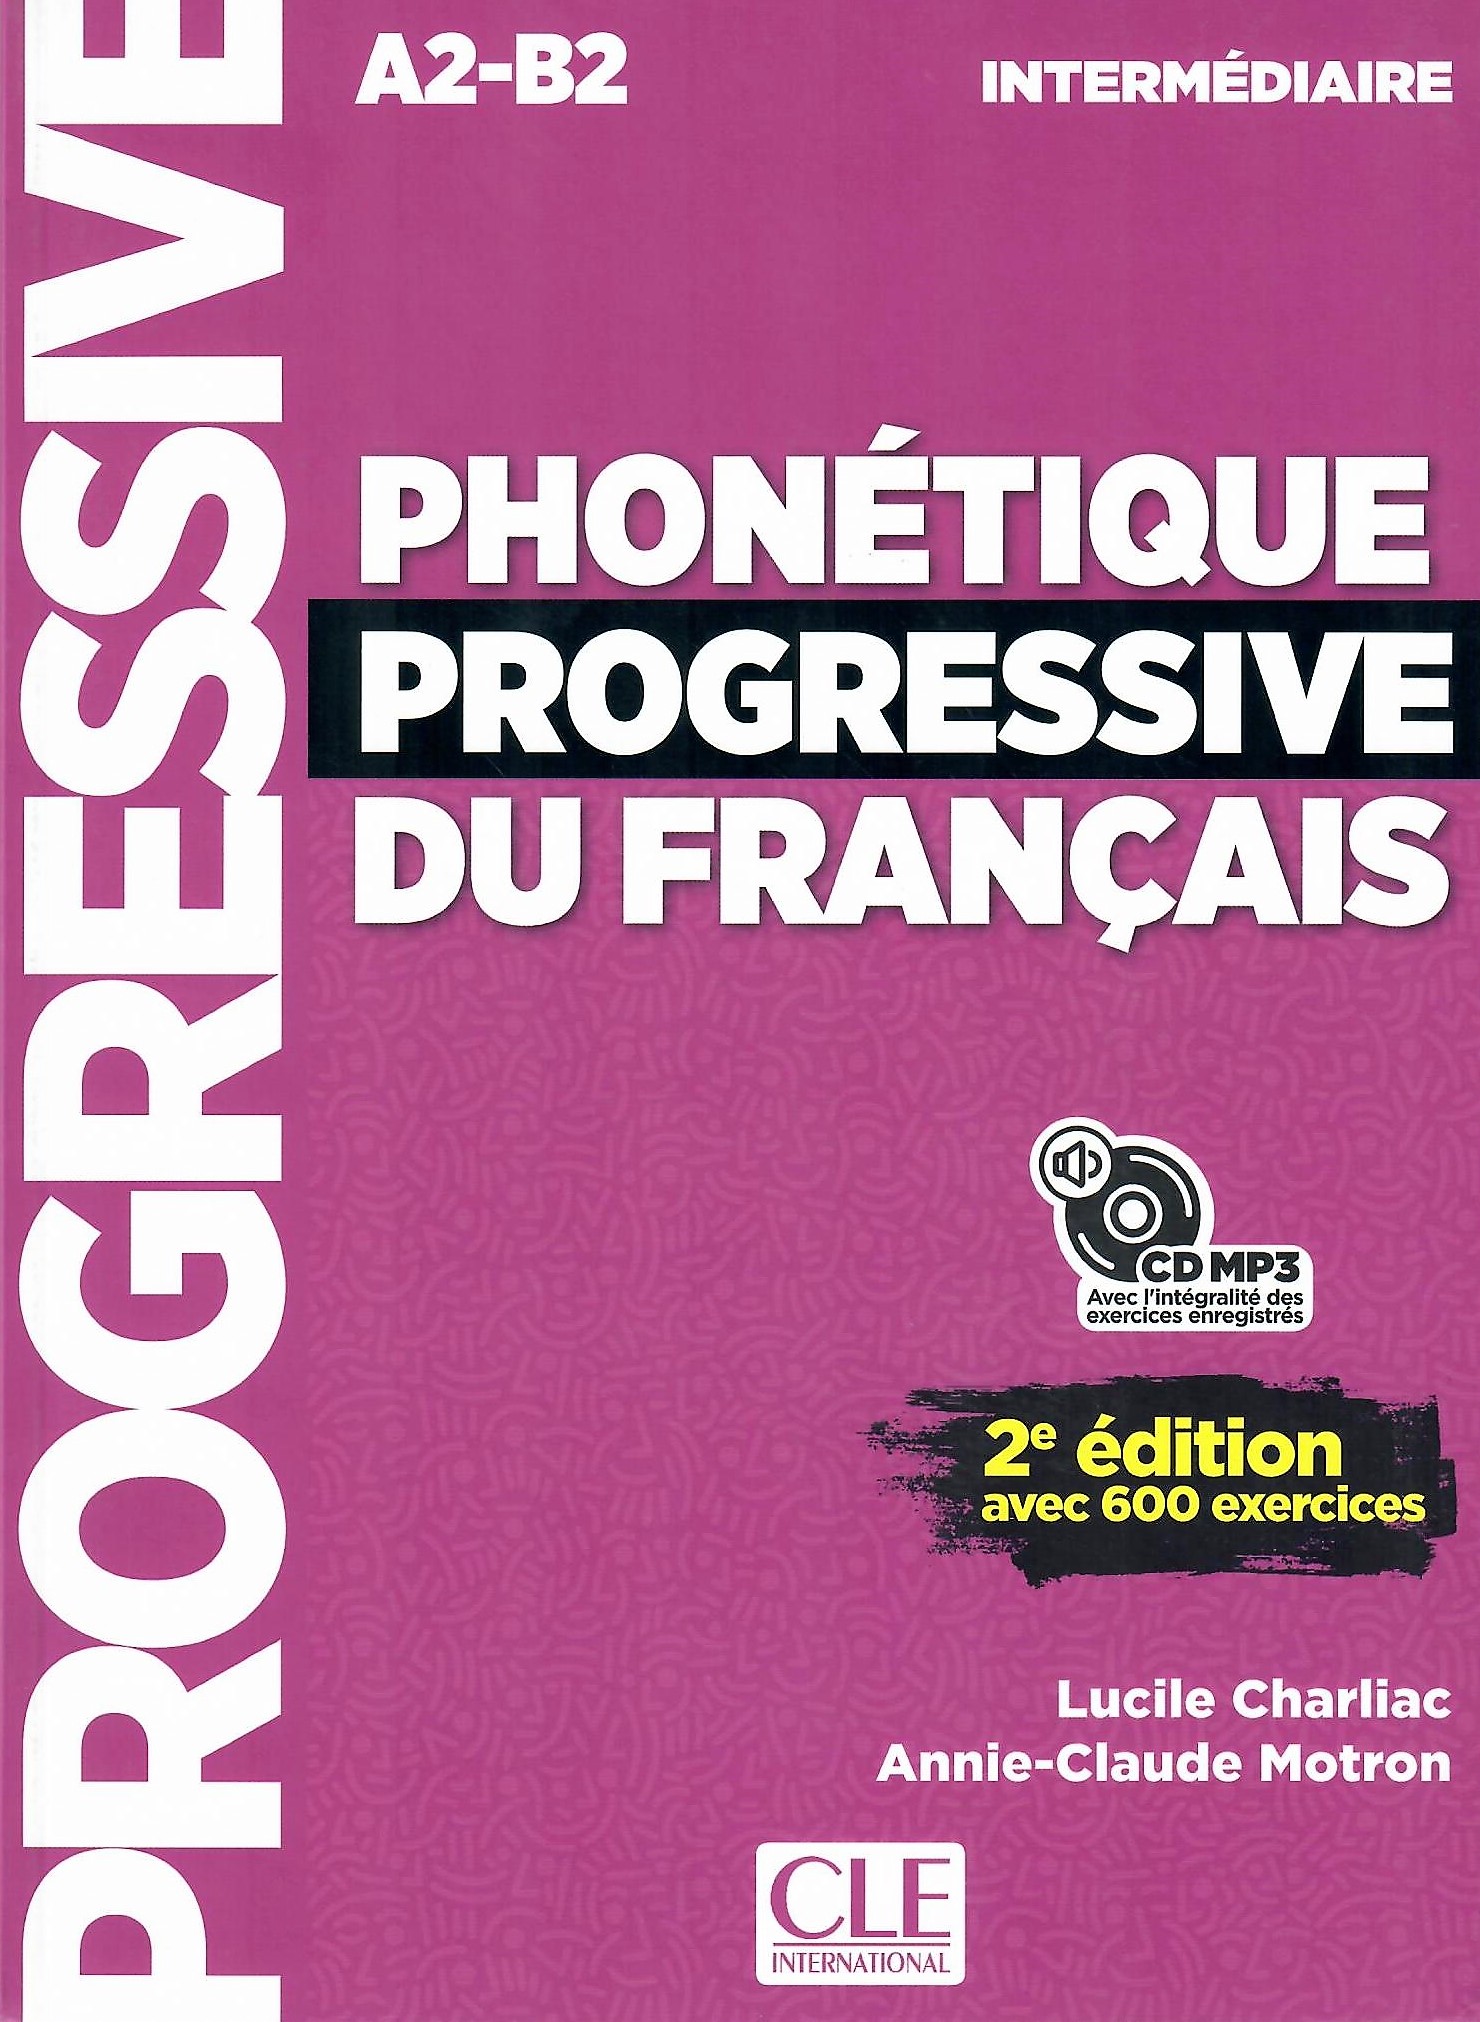 Phonetique Progressive du Francais (2e edition) Intermediaire Livre de l'eleve - 1